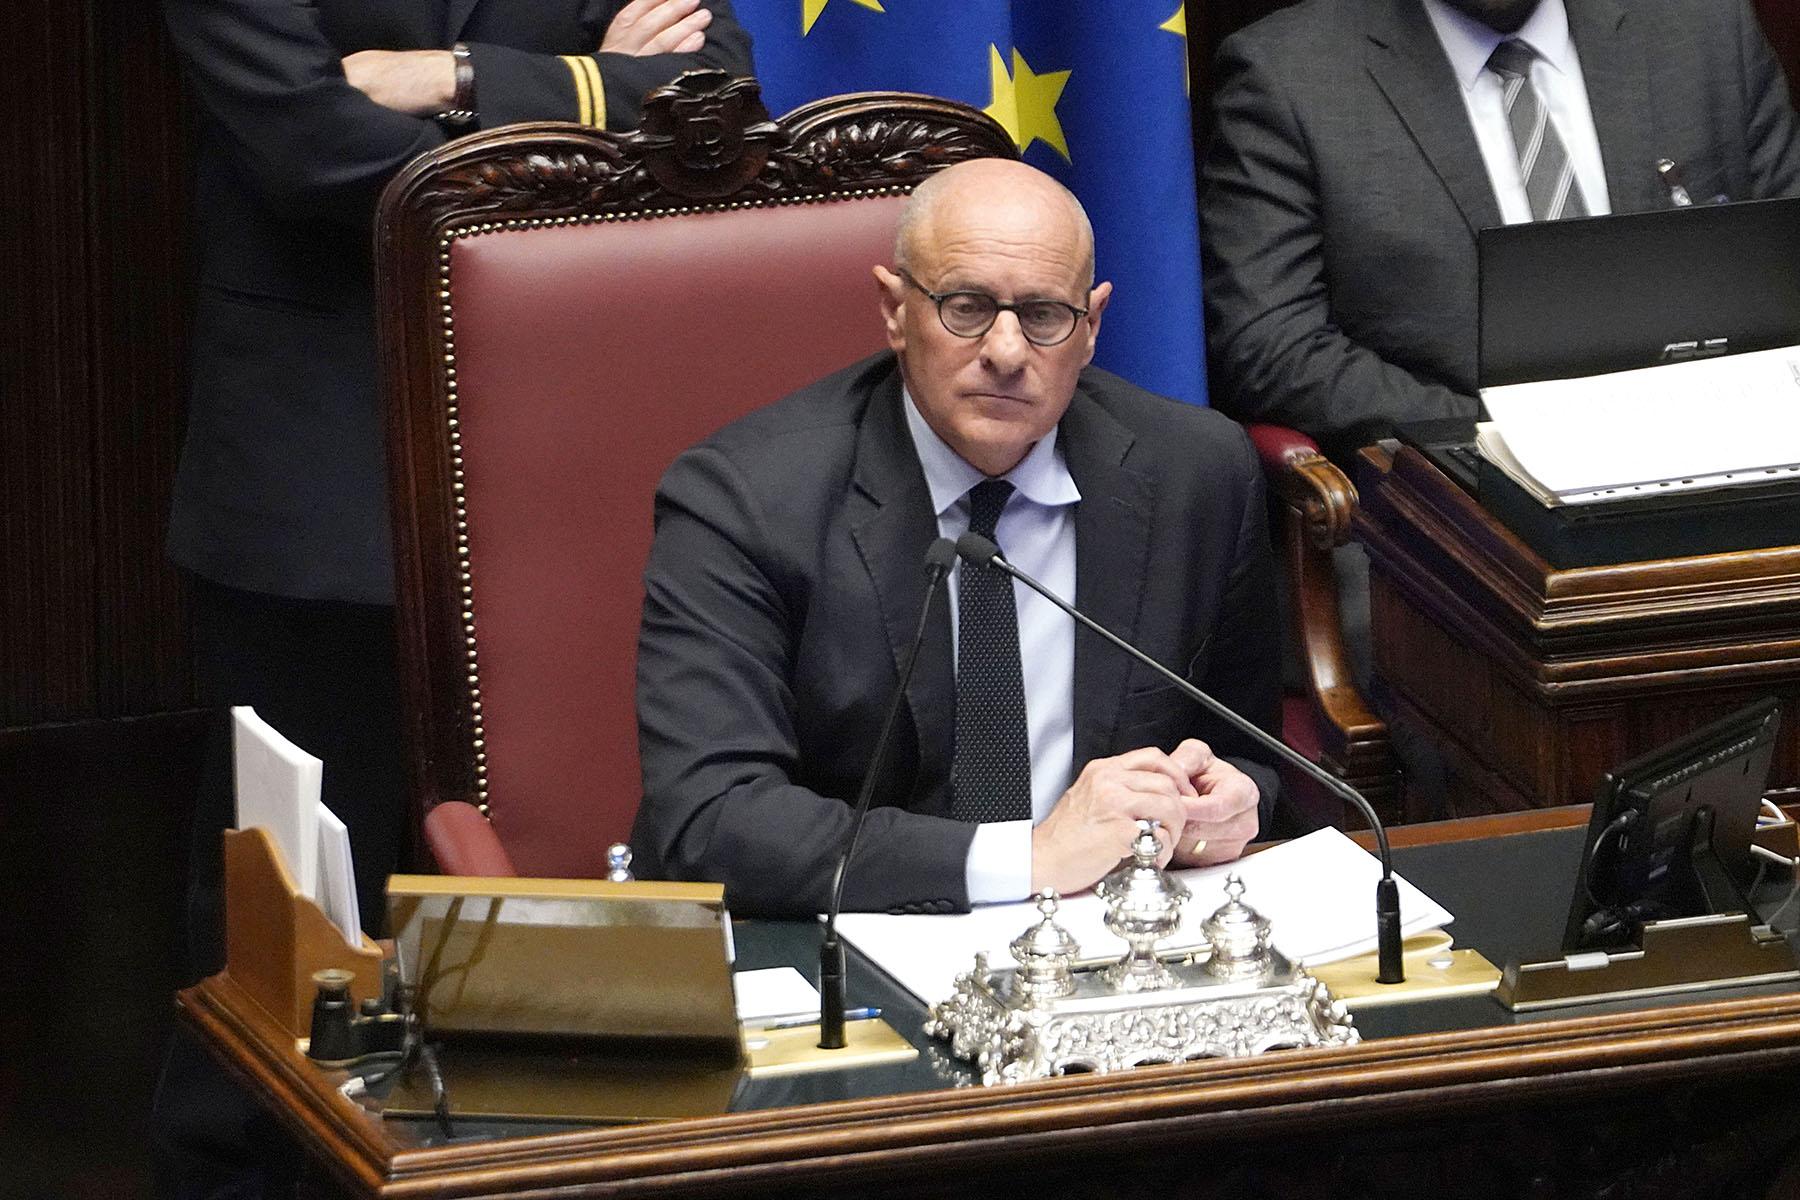 Il Vicepresidente della Camera dei deputati, Fabio Rampelli